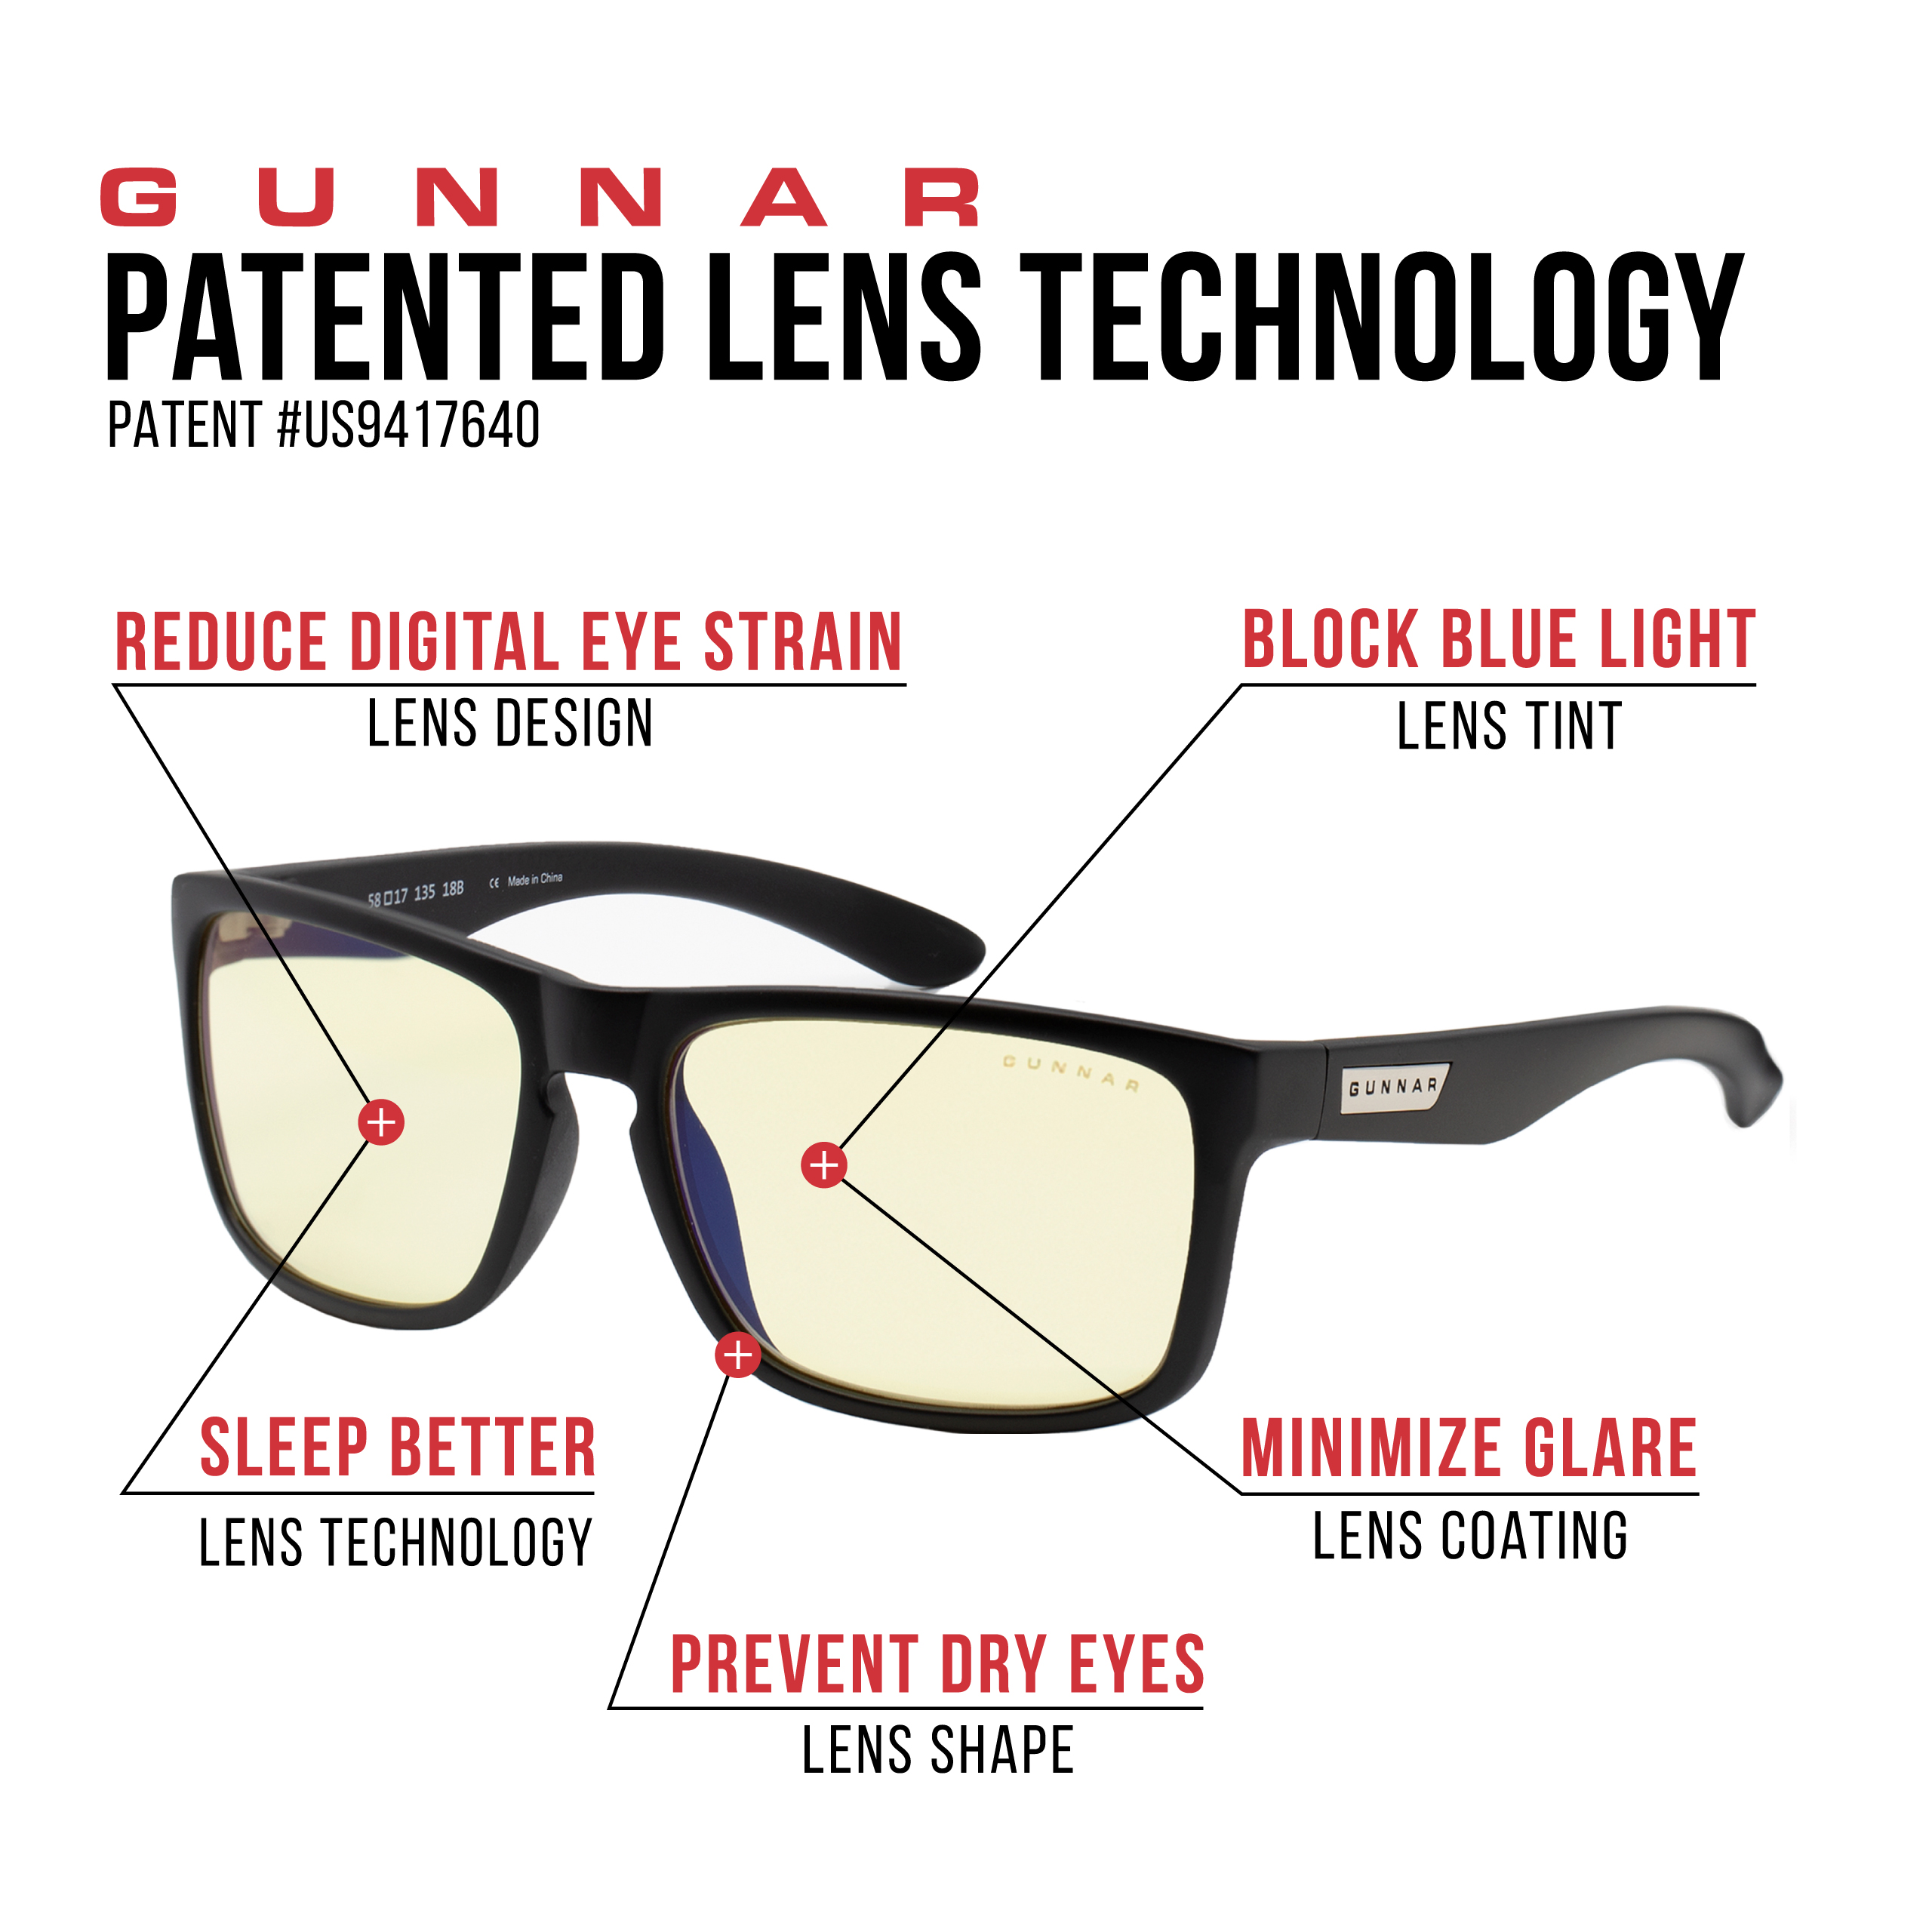 GUNNAR Intercept, Onyx Rahmen, Amber Stärke Tönung- 3.0, Blaulichtfilter, Premium, Gaming Brille UV-Schutz, 